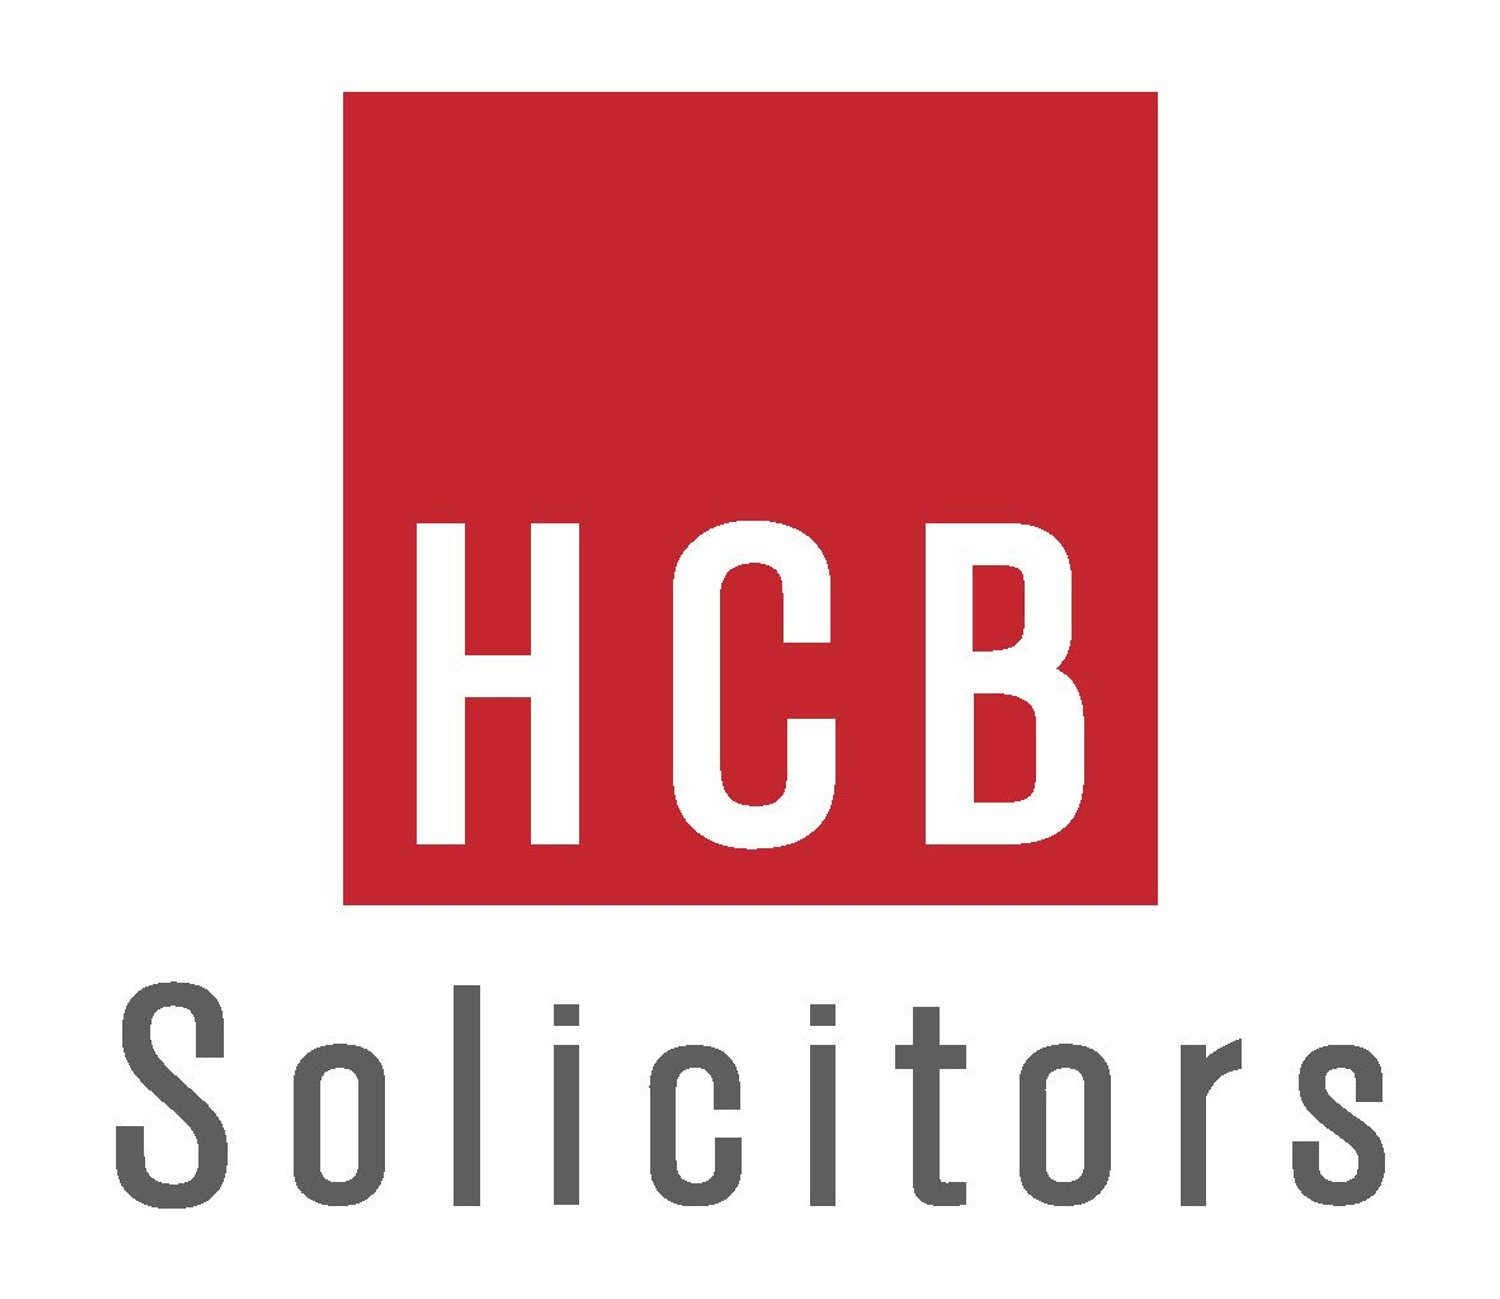 HCB solicitors